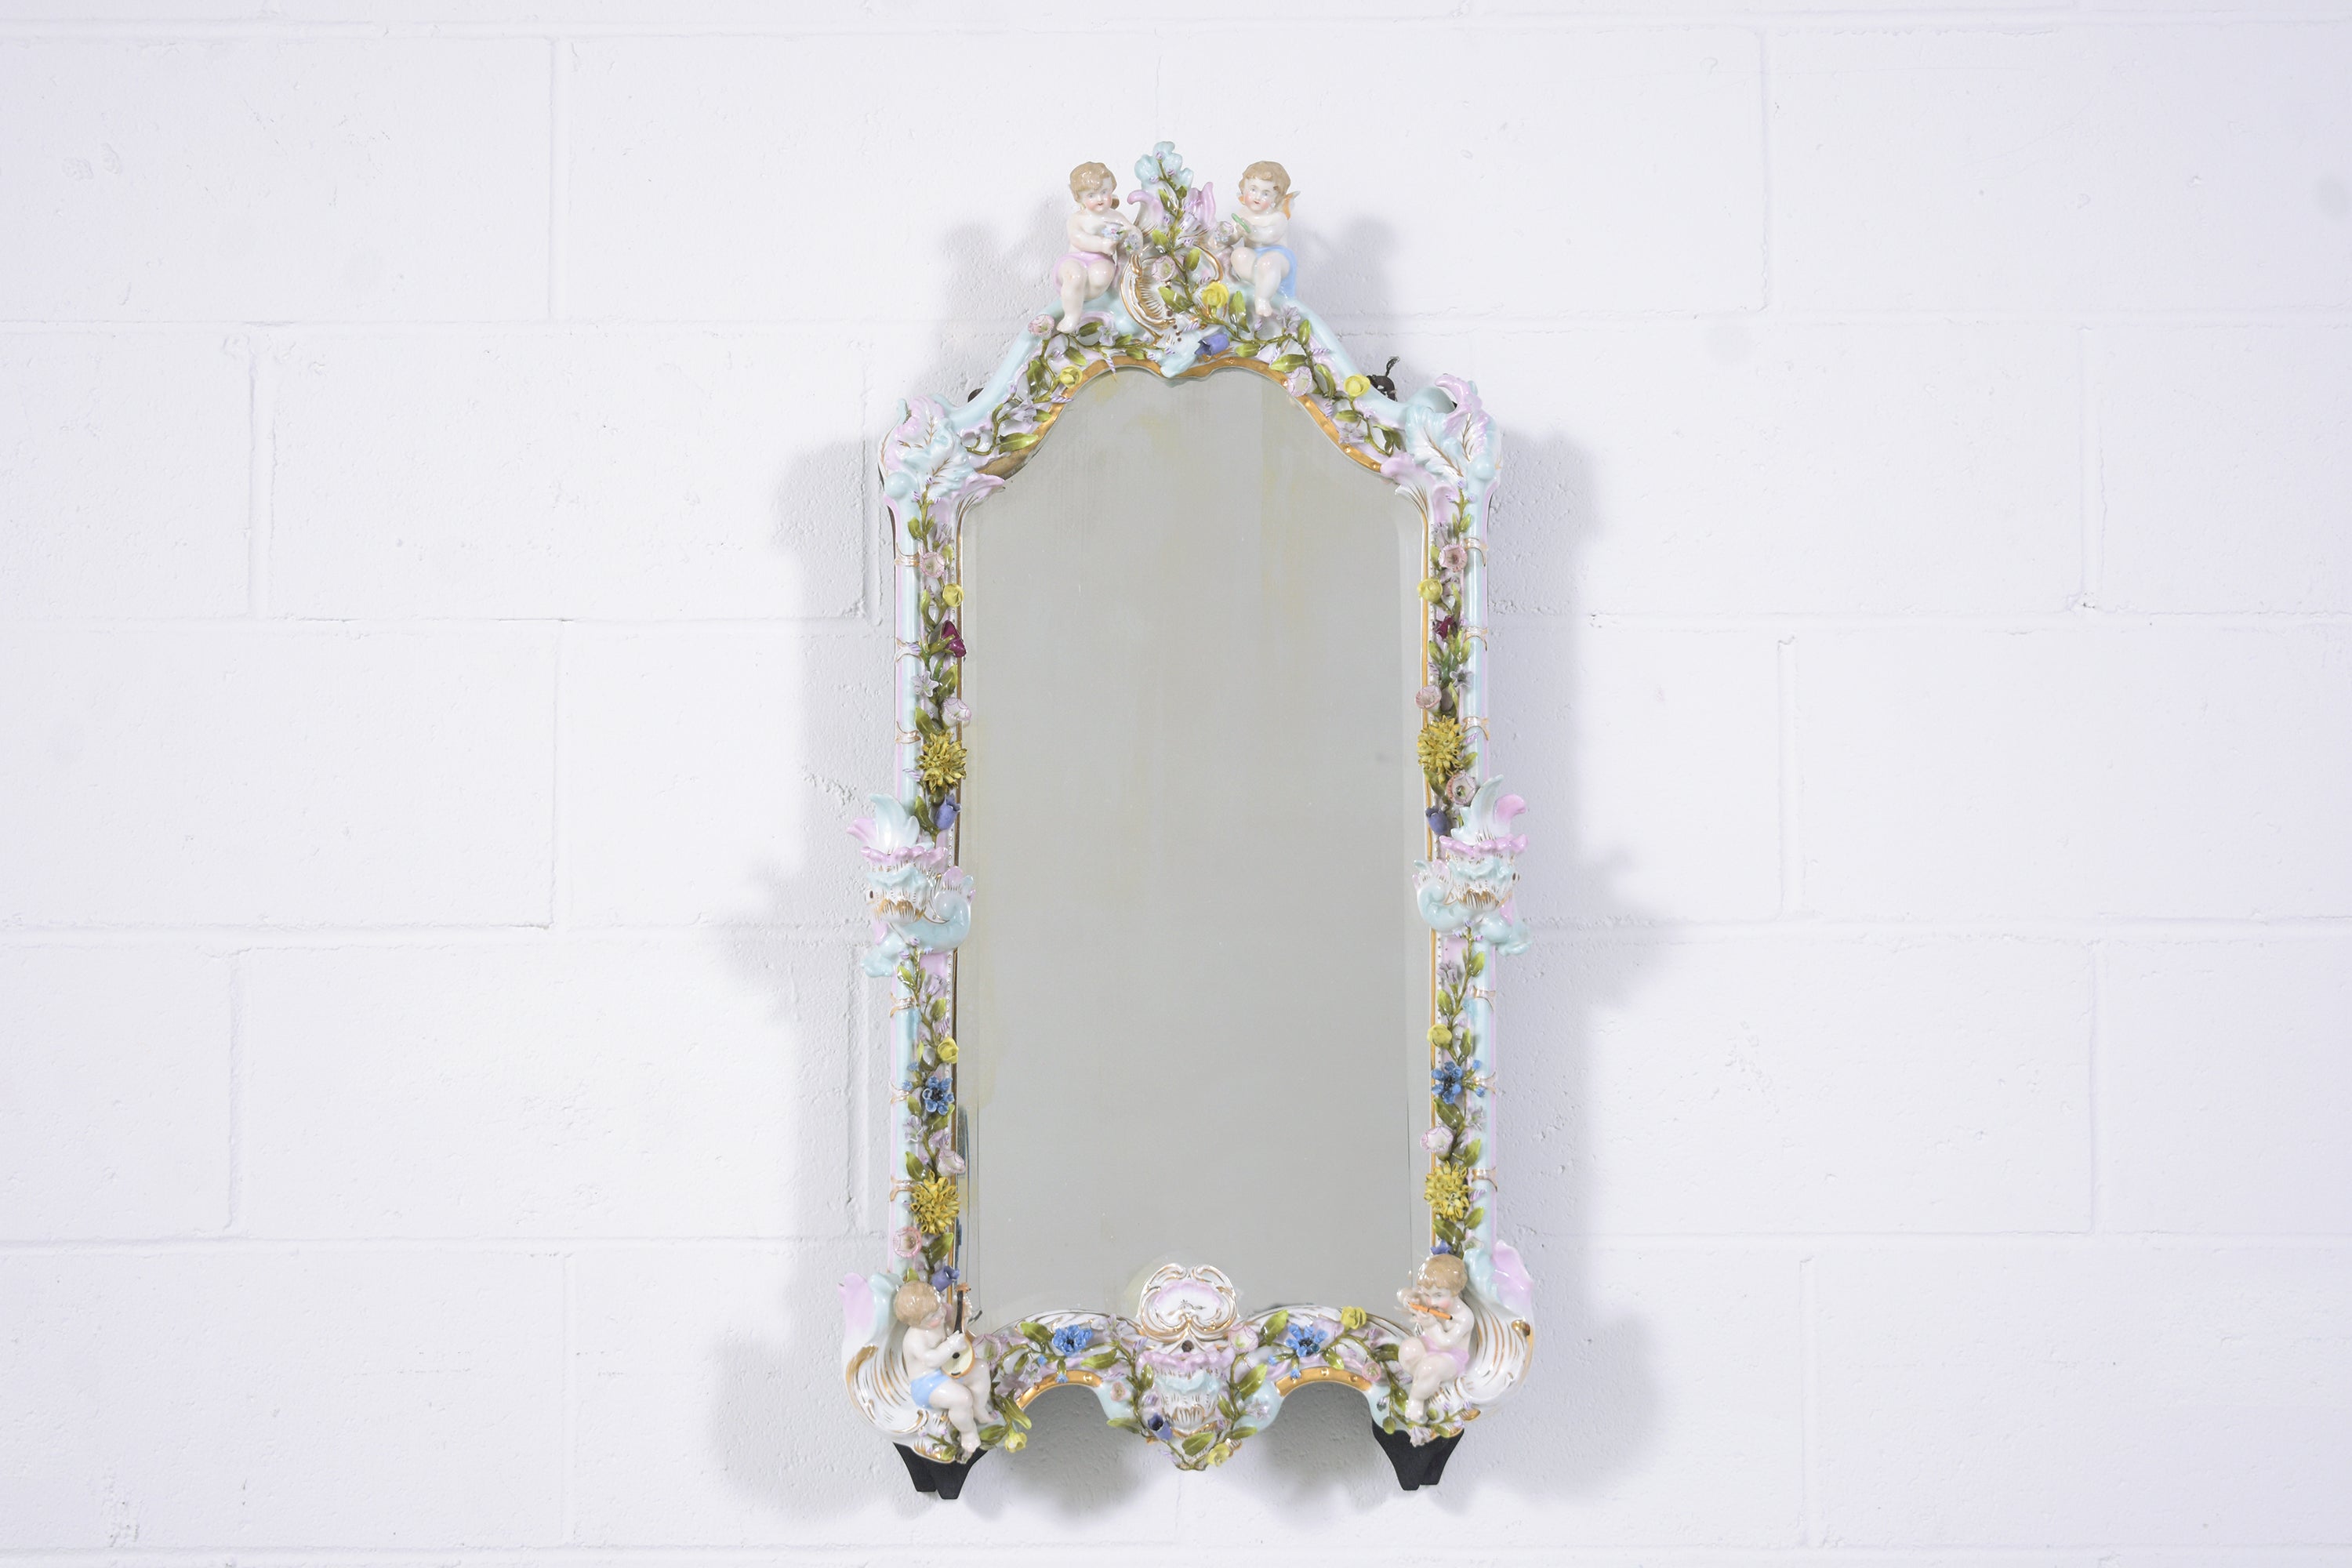 Lassen Sie sich von der Eleganz unseres deutschen Spiegels im Stil der Belle Époque aus den frühen 1900er Jahren begeistern. Er ist meisterhaft aus Porzellan gefertigt und in sehr gutem Zustand. Dieses bemerkenswerte Stück zeigt einen detailreichen